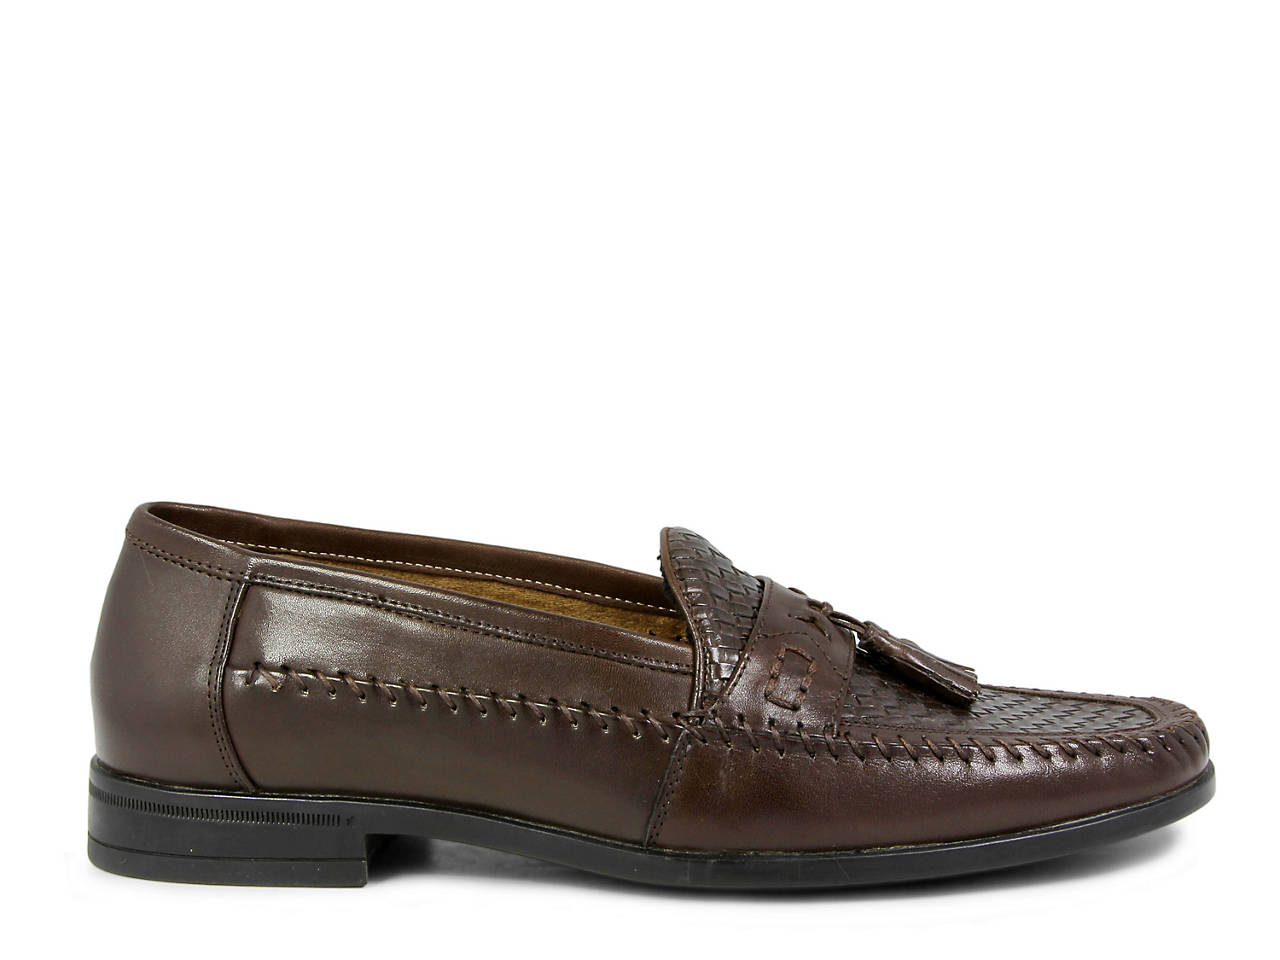 Nunn Bush Strafford Tassel Loafer Men's Shoes | DSW